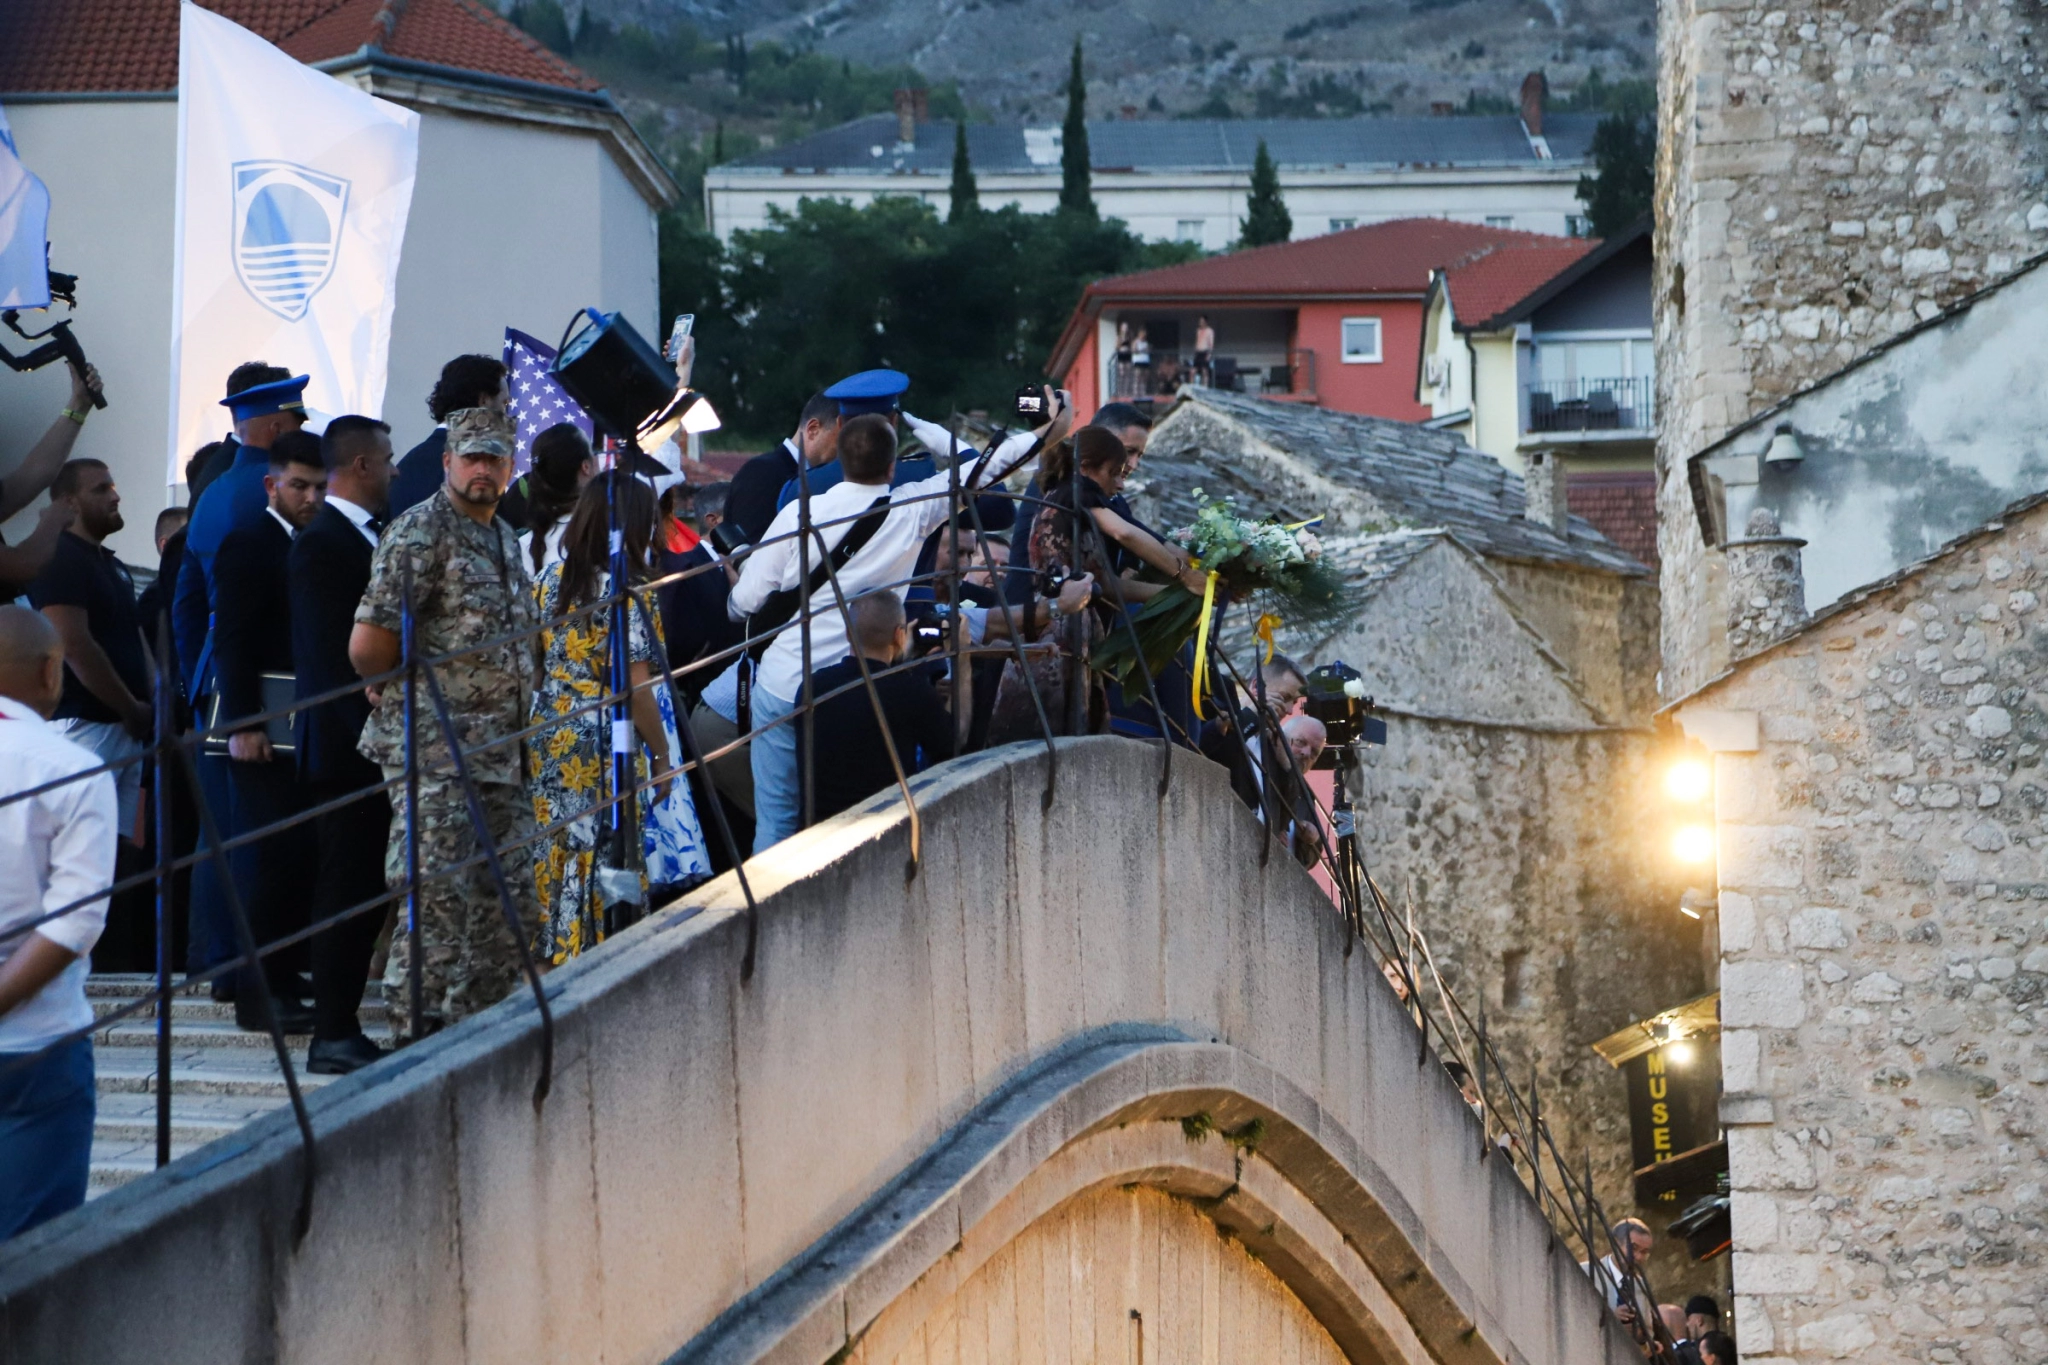 Mostar ne zaboravlja prijatelje: I ove godine odaslane poruke mira iz grada na Neretvi